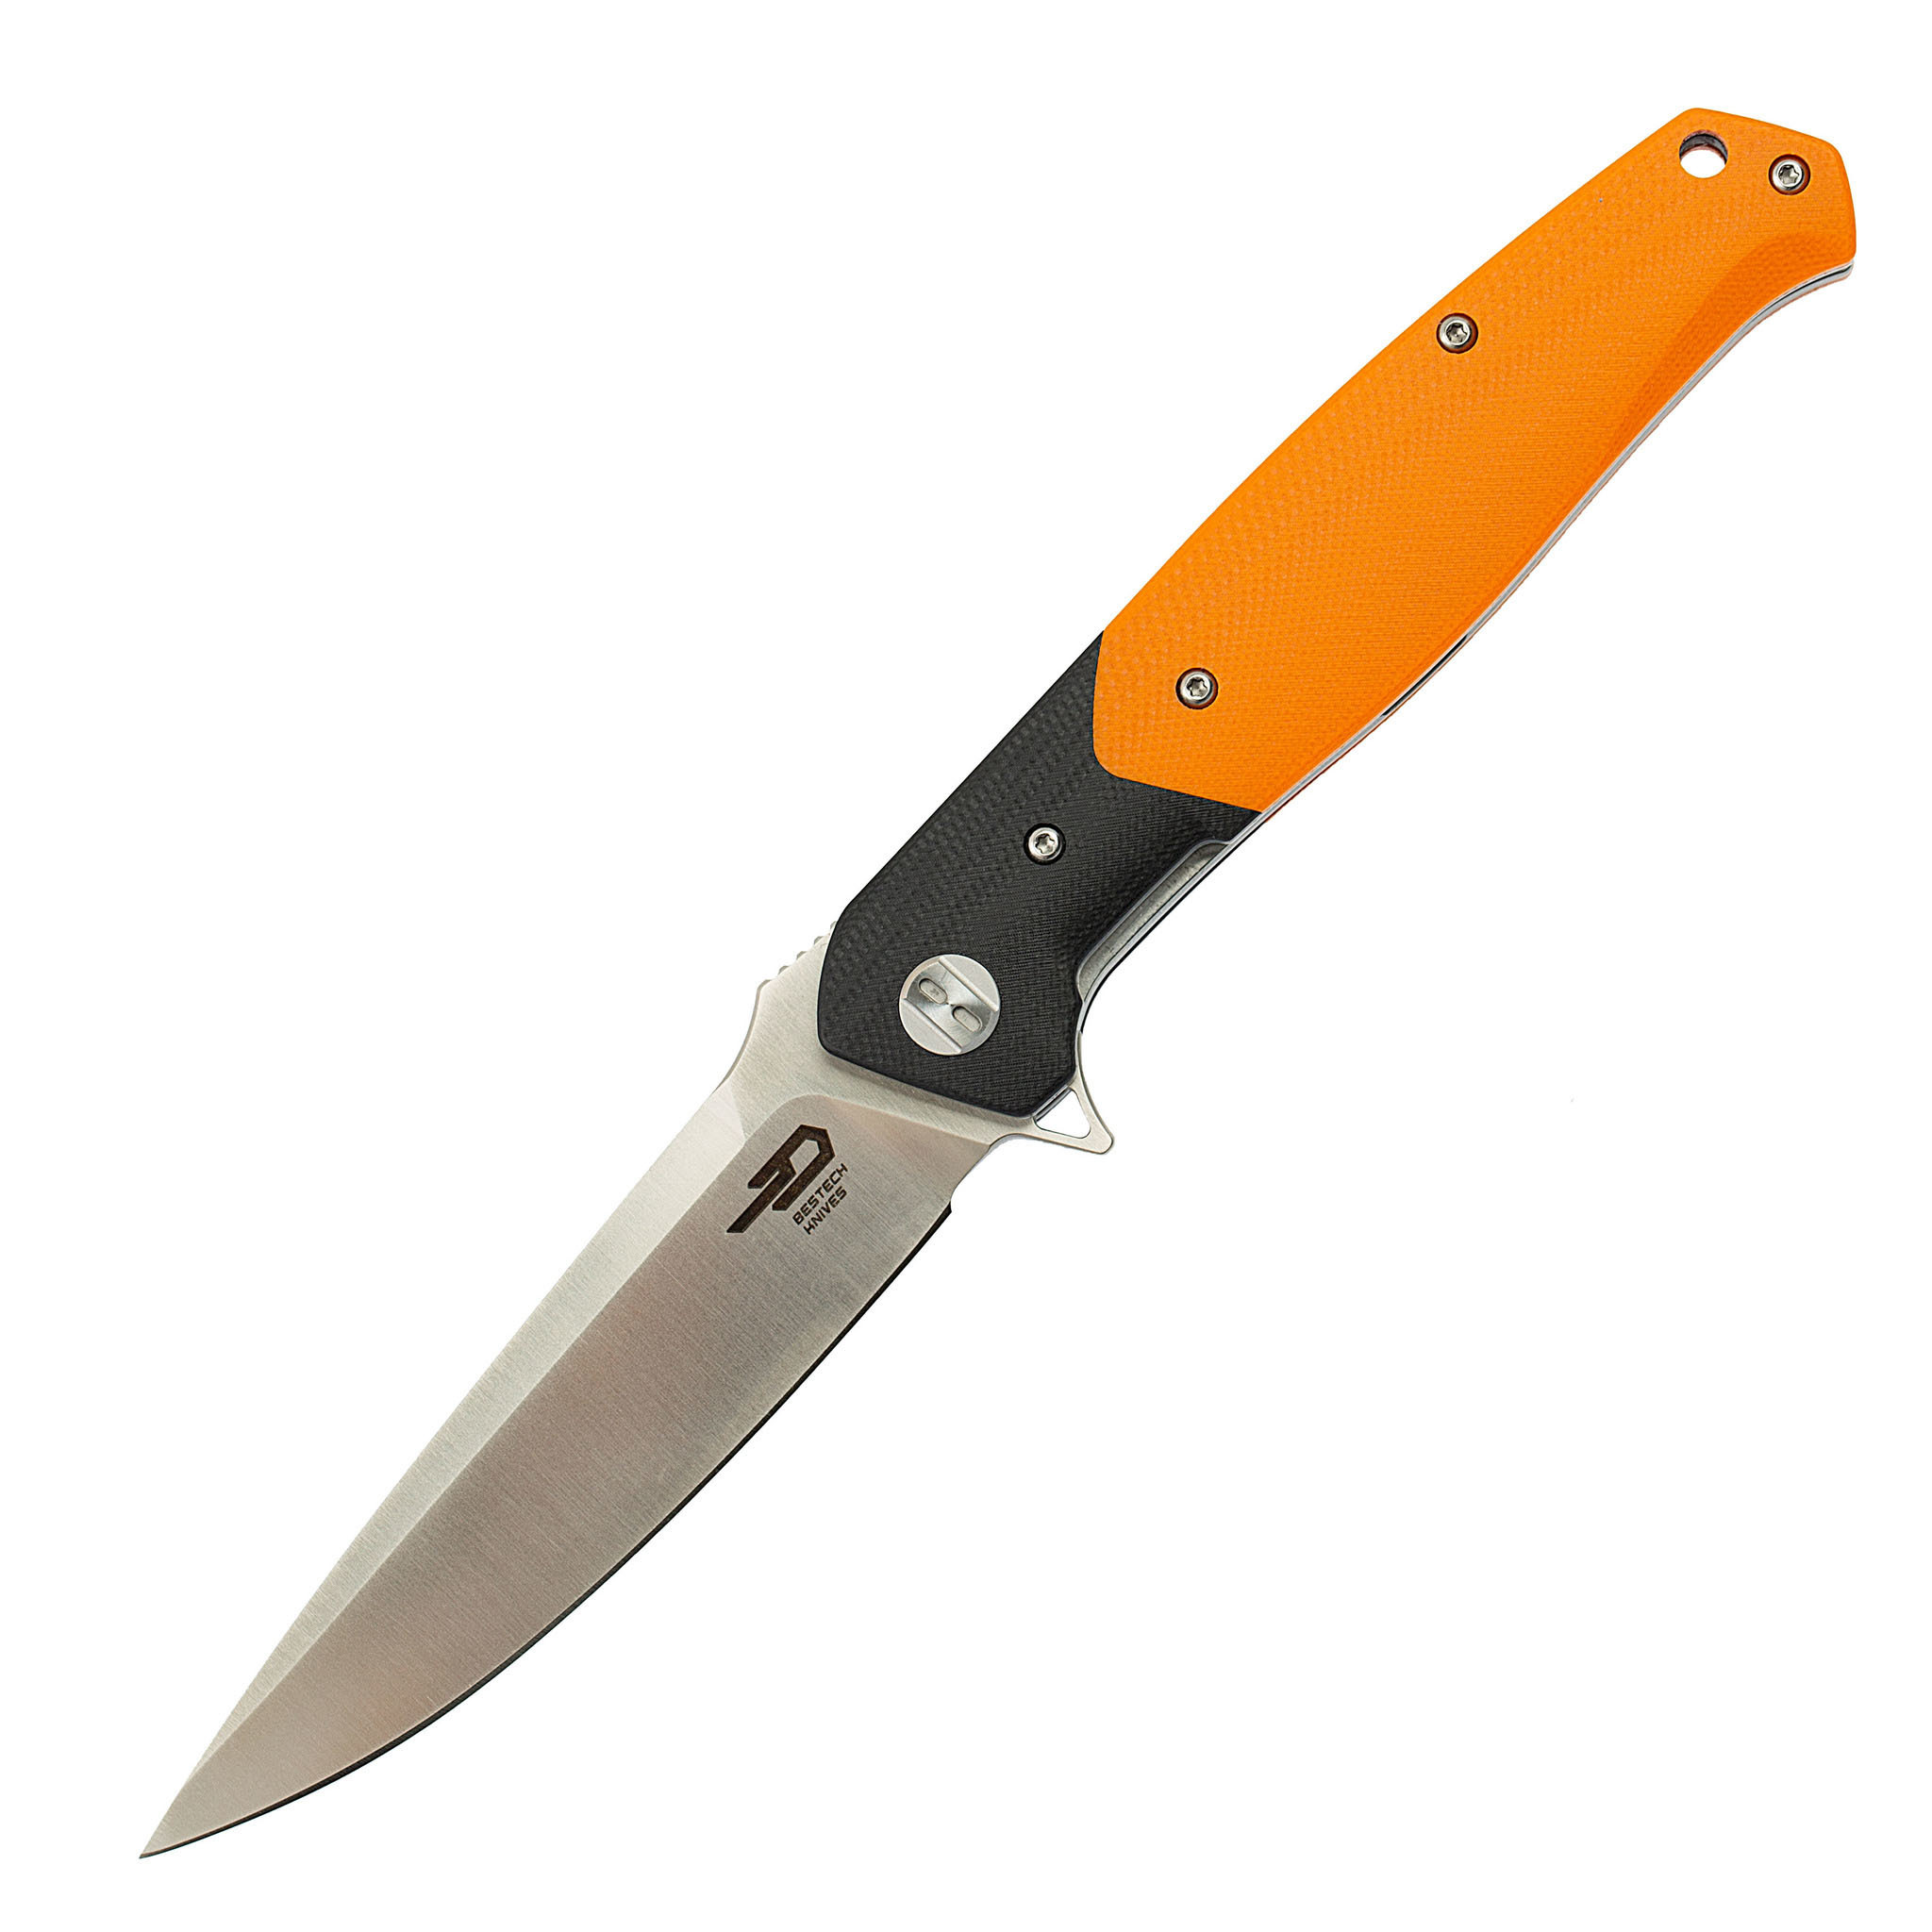 Складной нож Bestech Swordfish Оранжевый, D2 складной нож bestech swordfish оранжевый d2